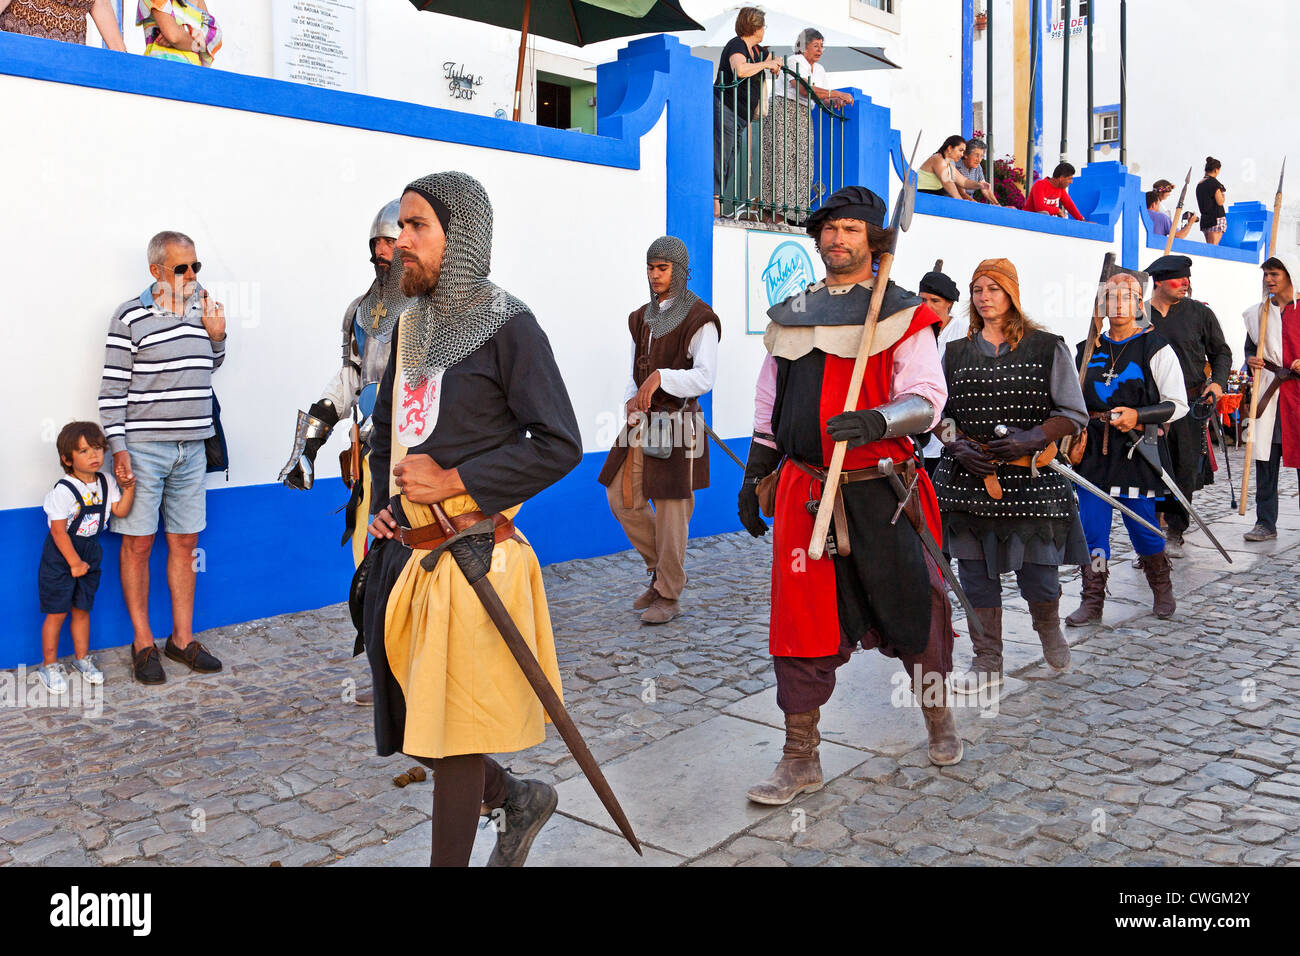 Guerrieri in una rievocazione storica di una Fiera medievale in Óbidos, Portogallo. Foto Stock